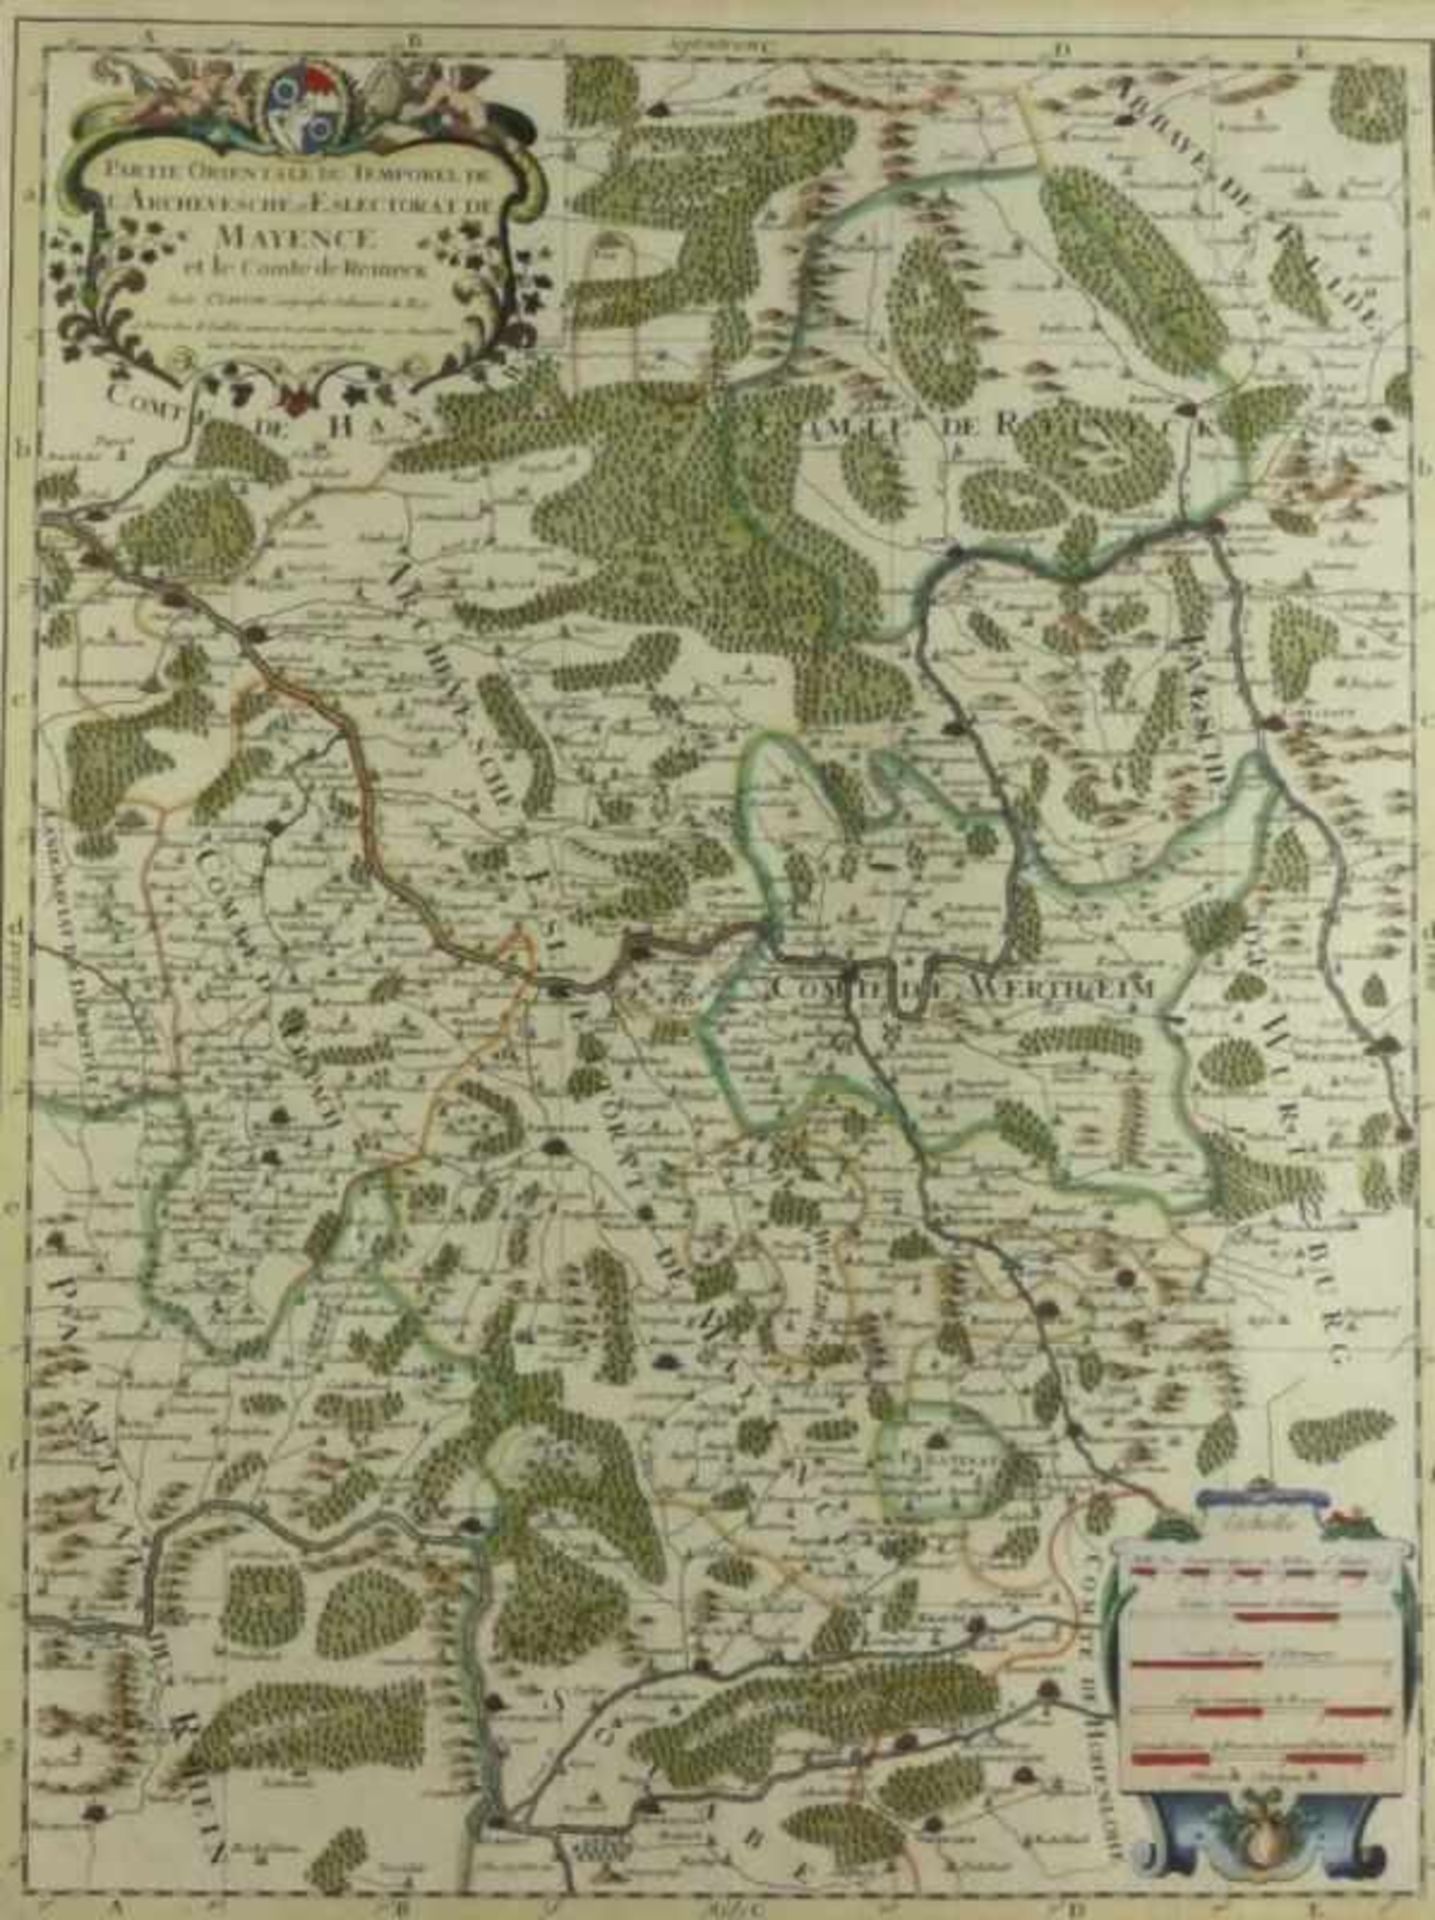 Sanson d'Abbeville, NicolasLandkarte des Erzbistums Mainz(Abbeville 1600-1667 Paris) "Partie